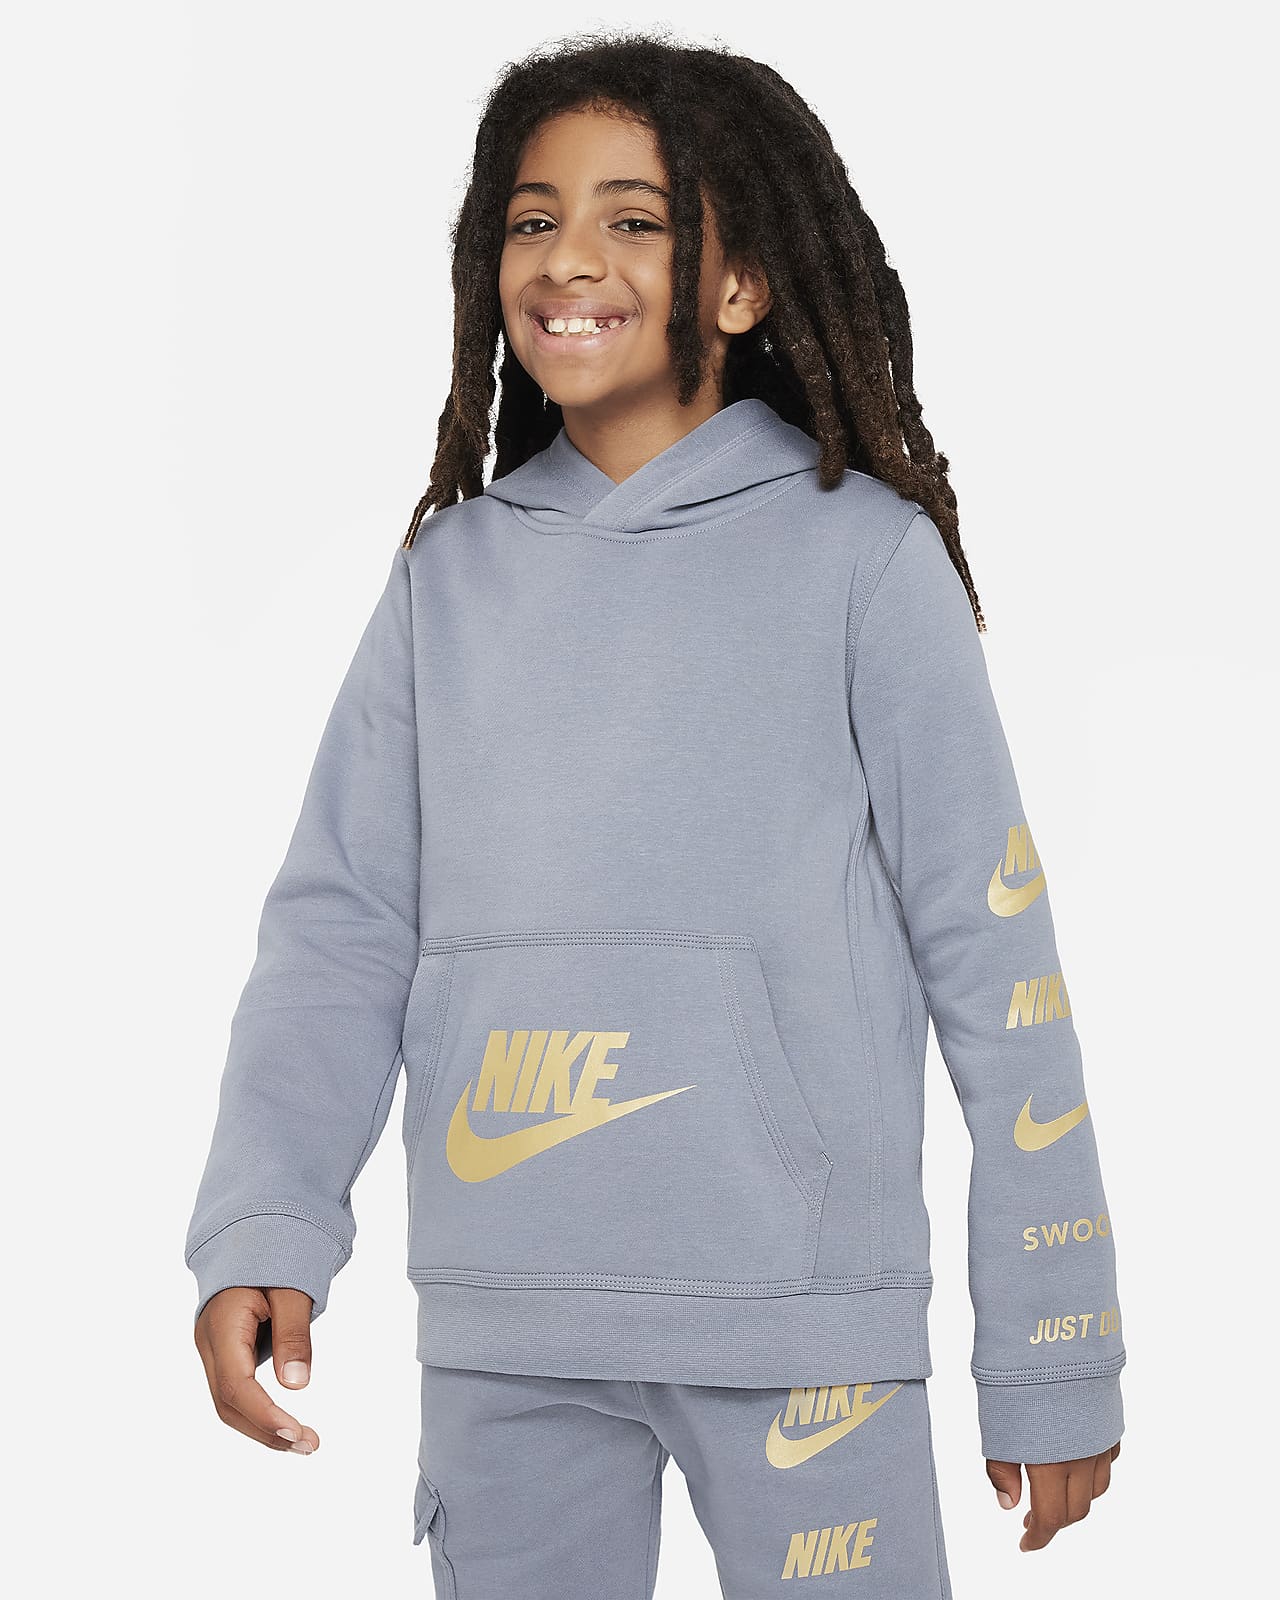 Hoodie. LU Nike Fleece Sportswear Pullover Nike Kids\' Standard Issue Older